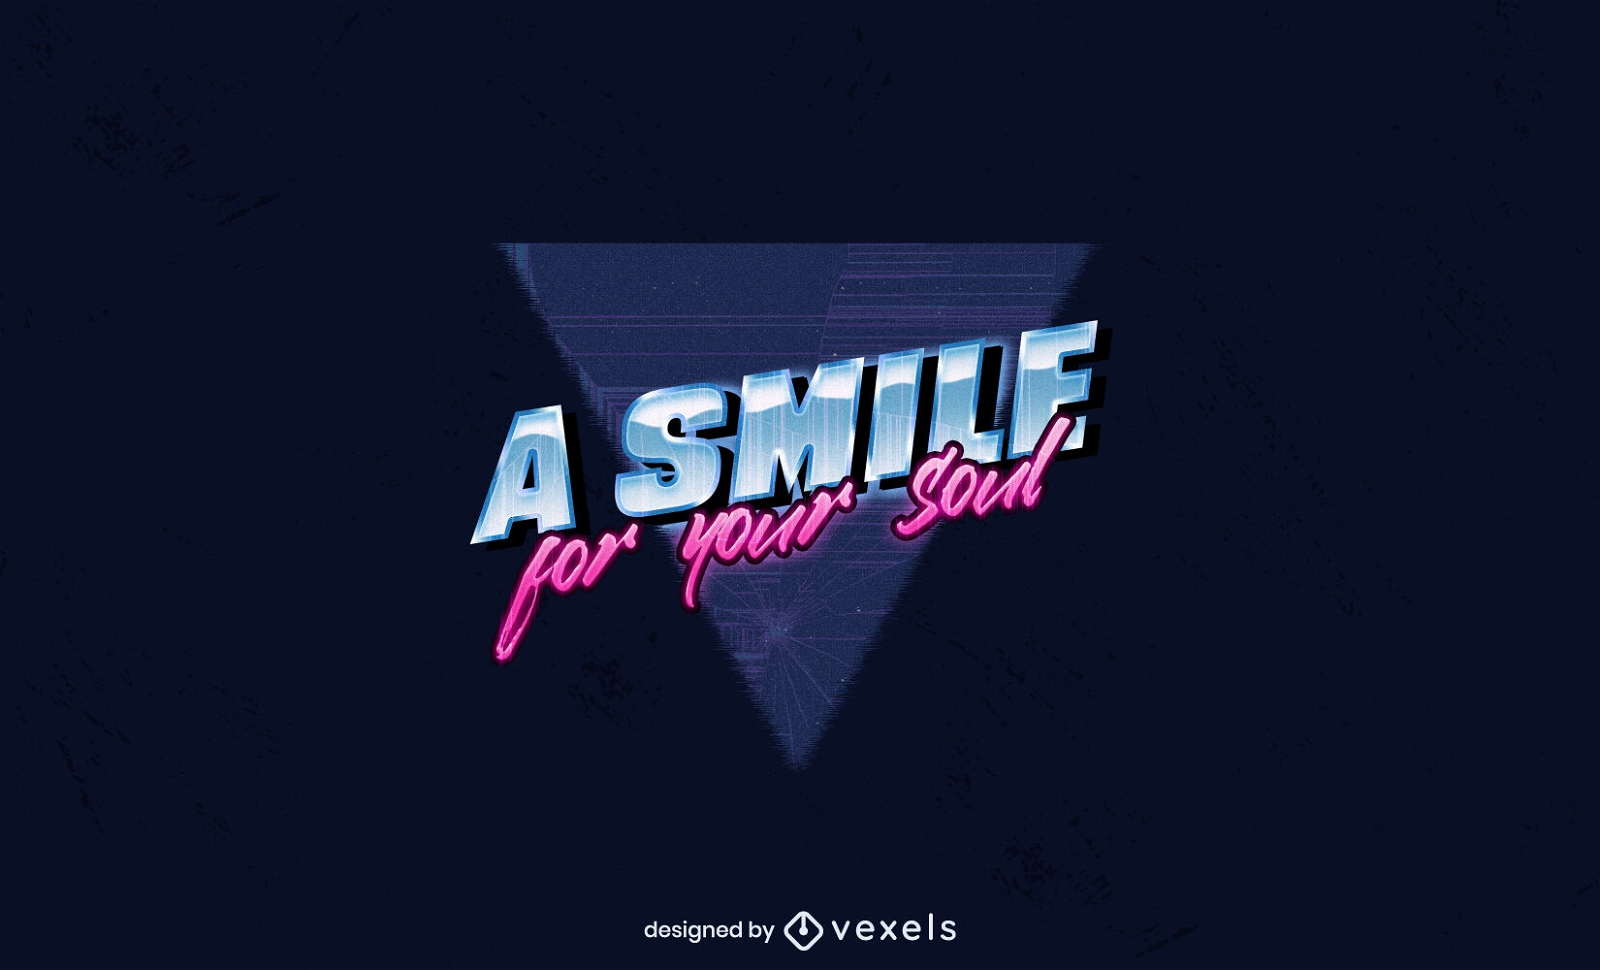 Smile for your soul vaporwave logo design